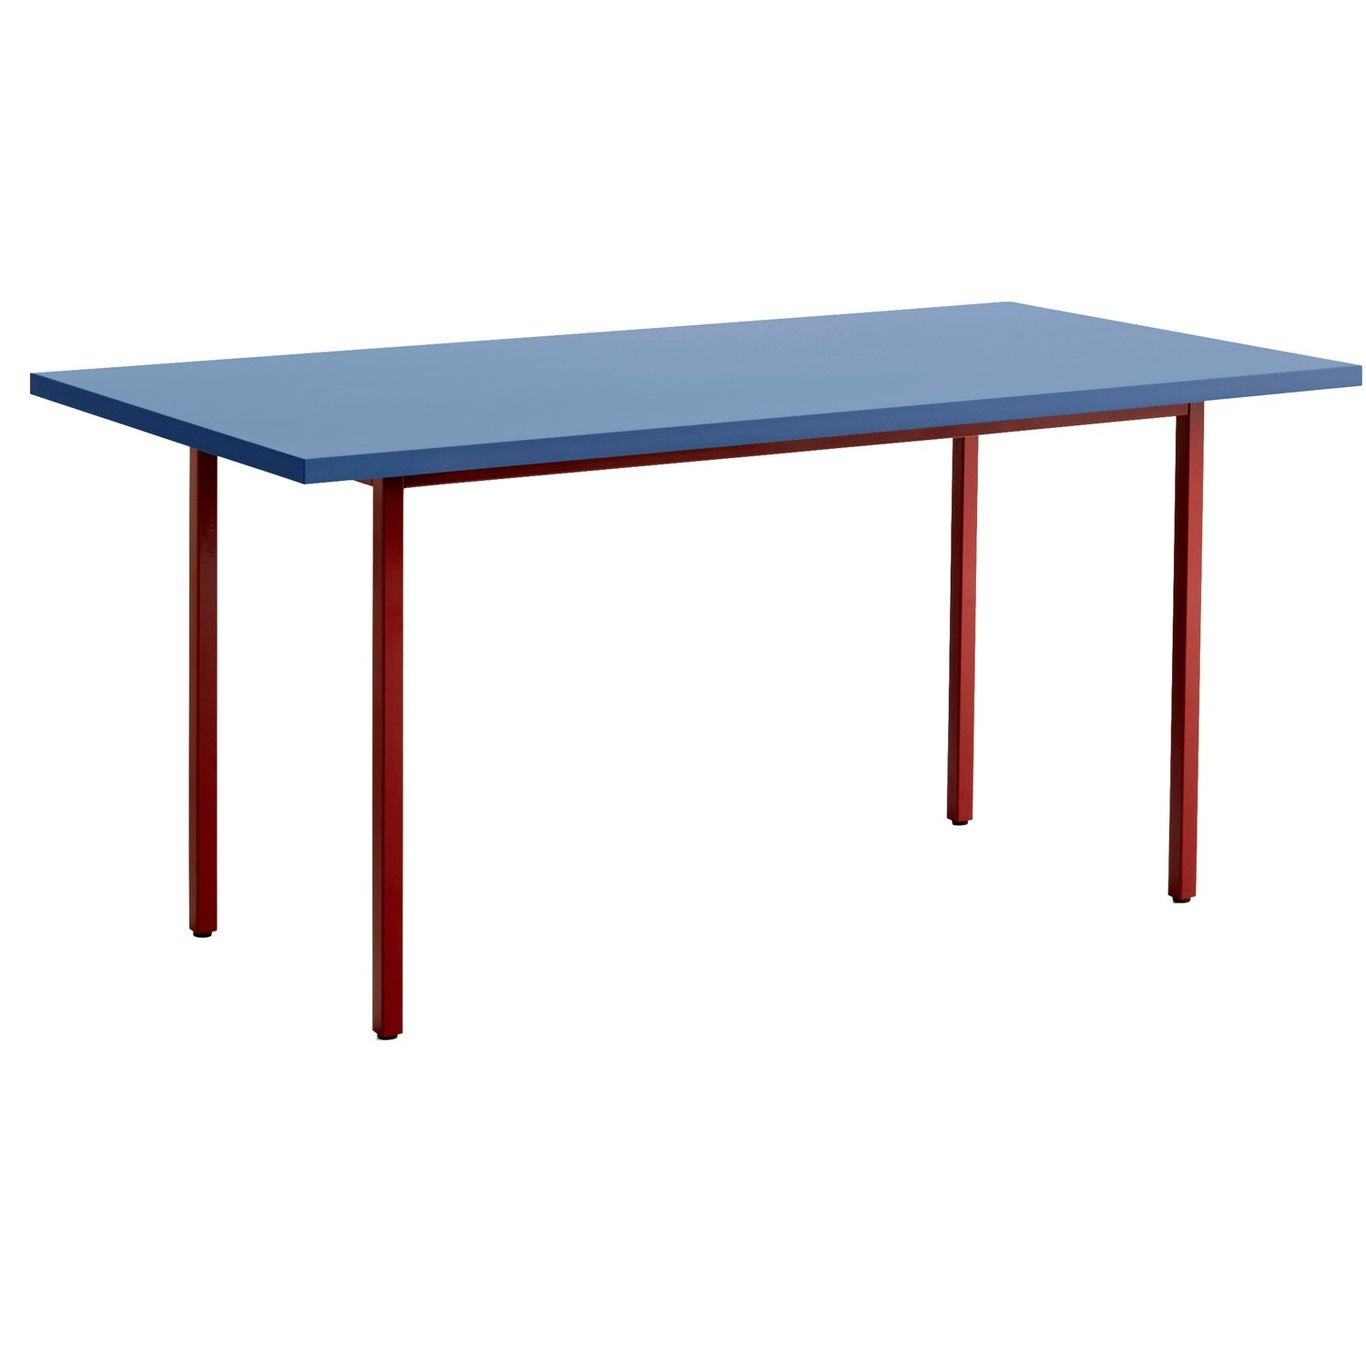 Two-Colour Pöytä 160x82 cm, Viininpunainen / Sininen